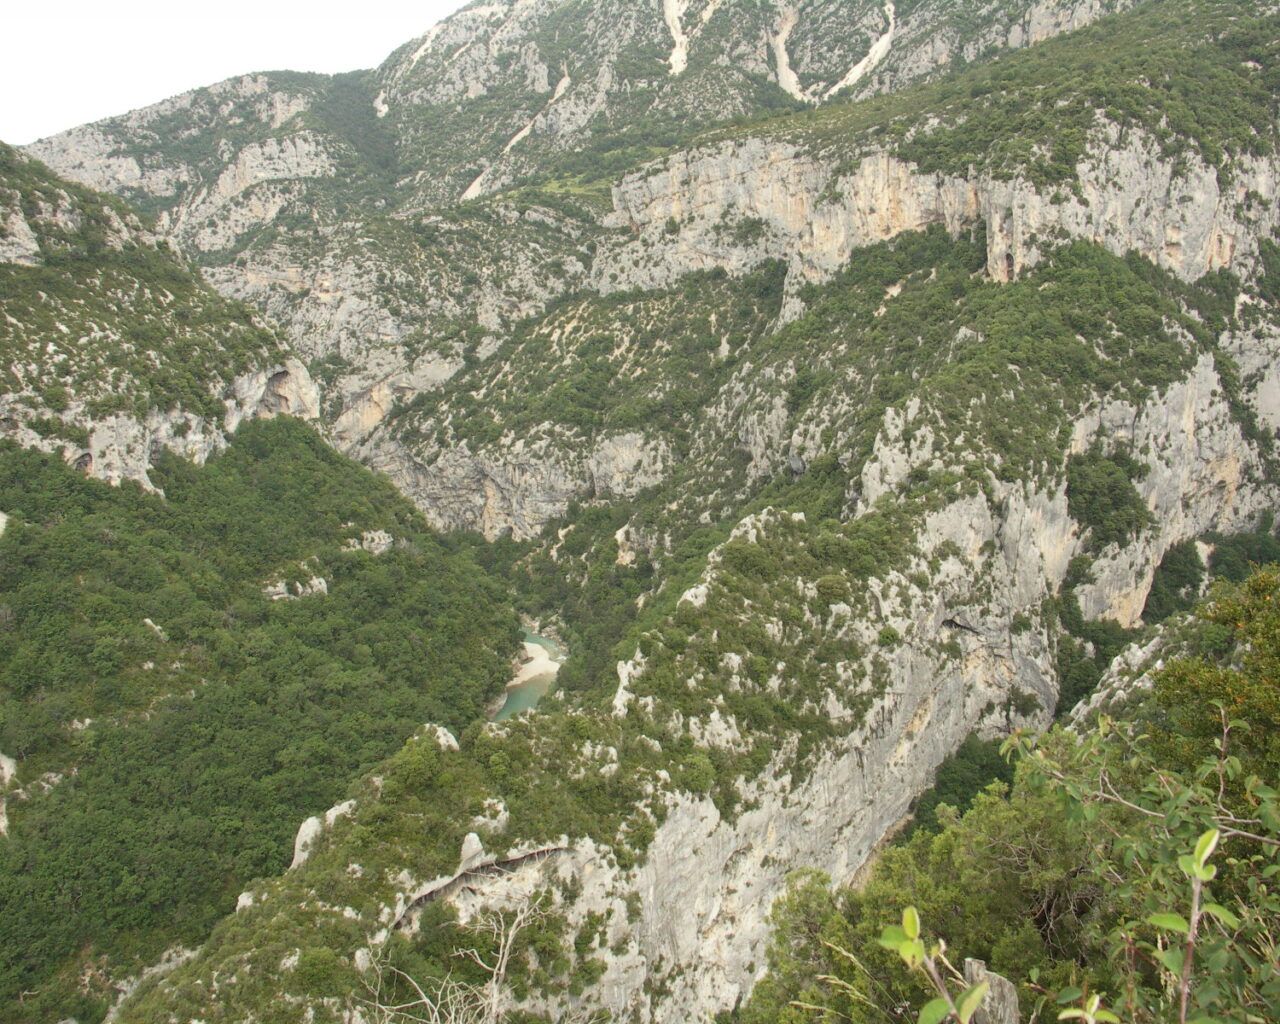 01 Les gorges du Verdon se présentent en de gigantesques falaises de roches calcaires